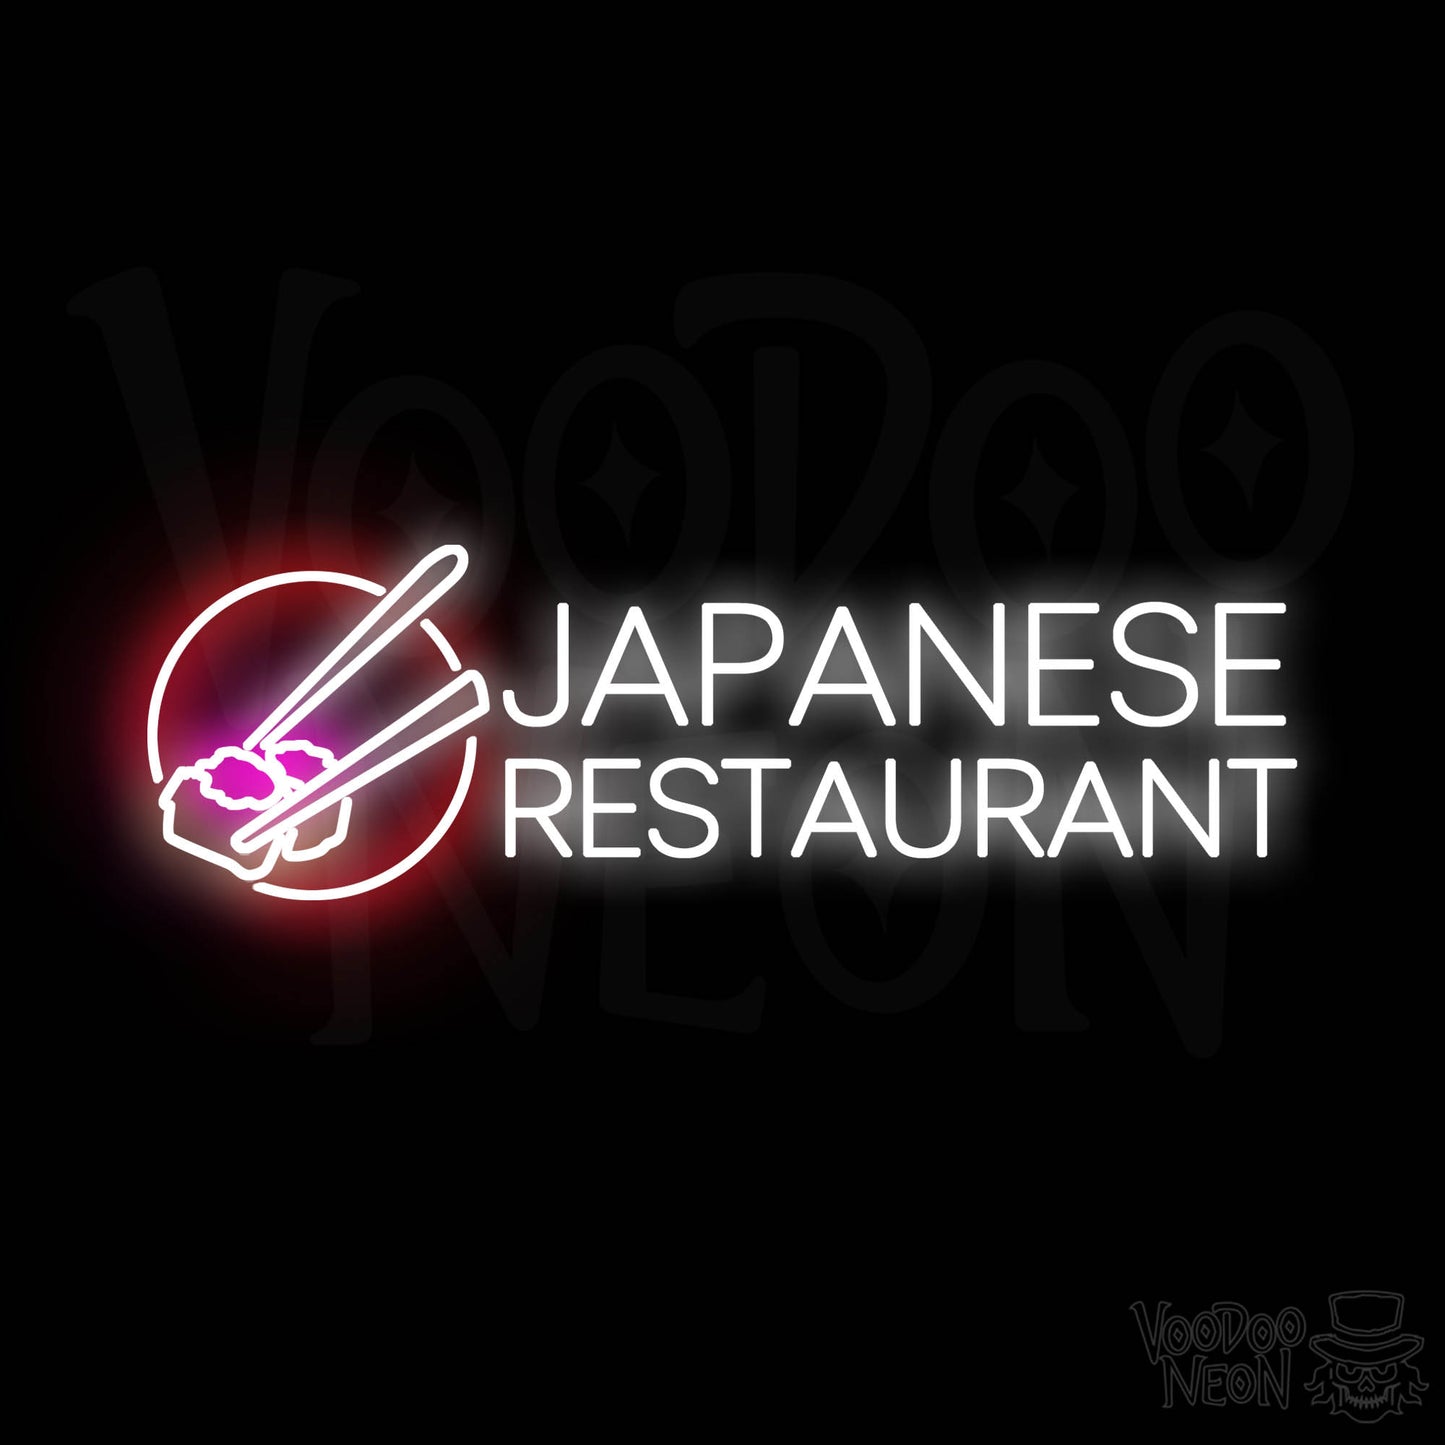 Japanese Restaurant LED Neon - Multi-Color